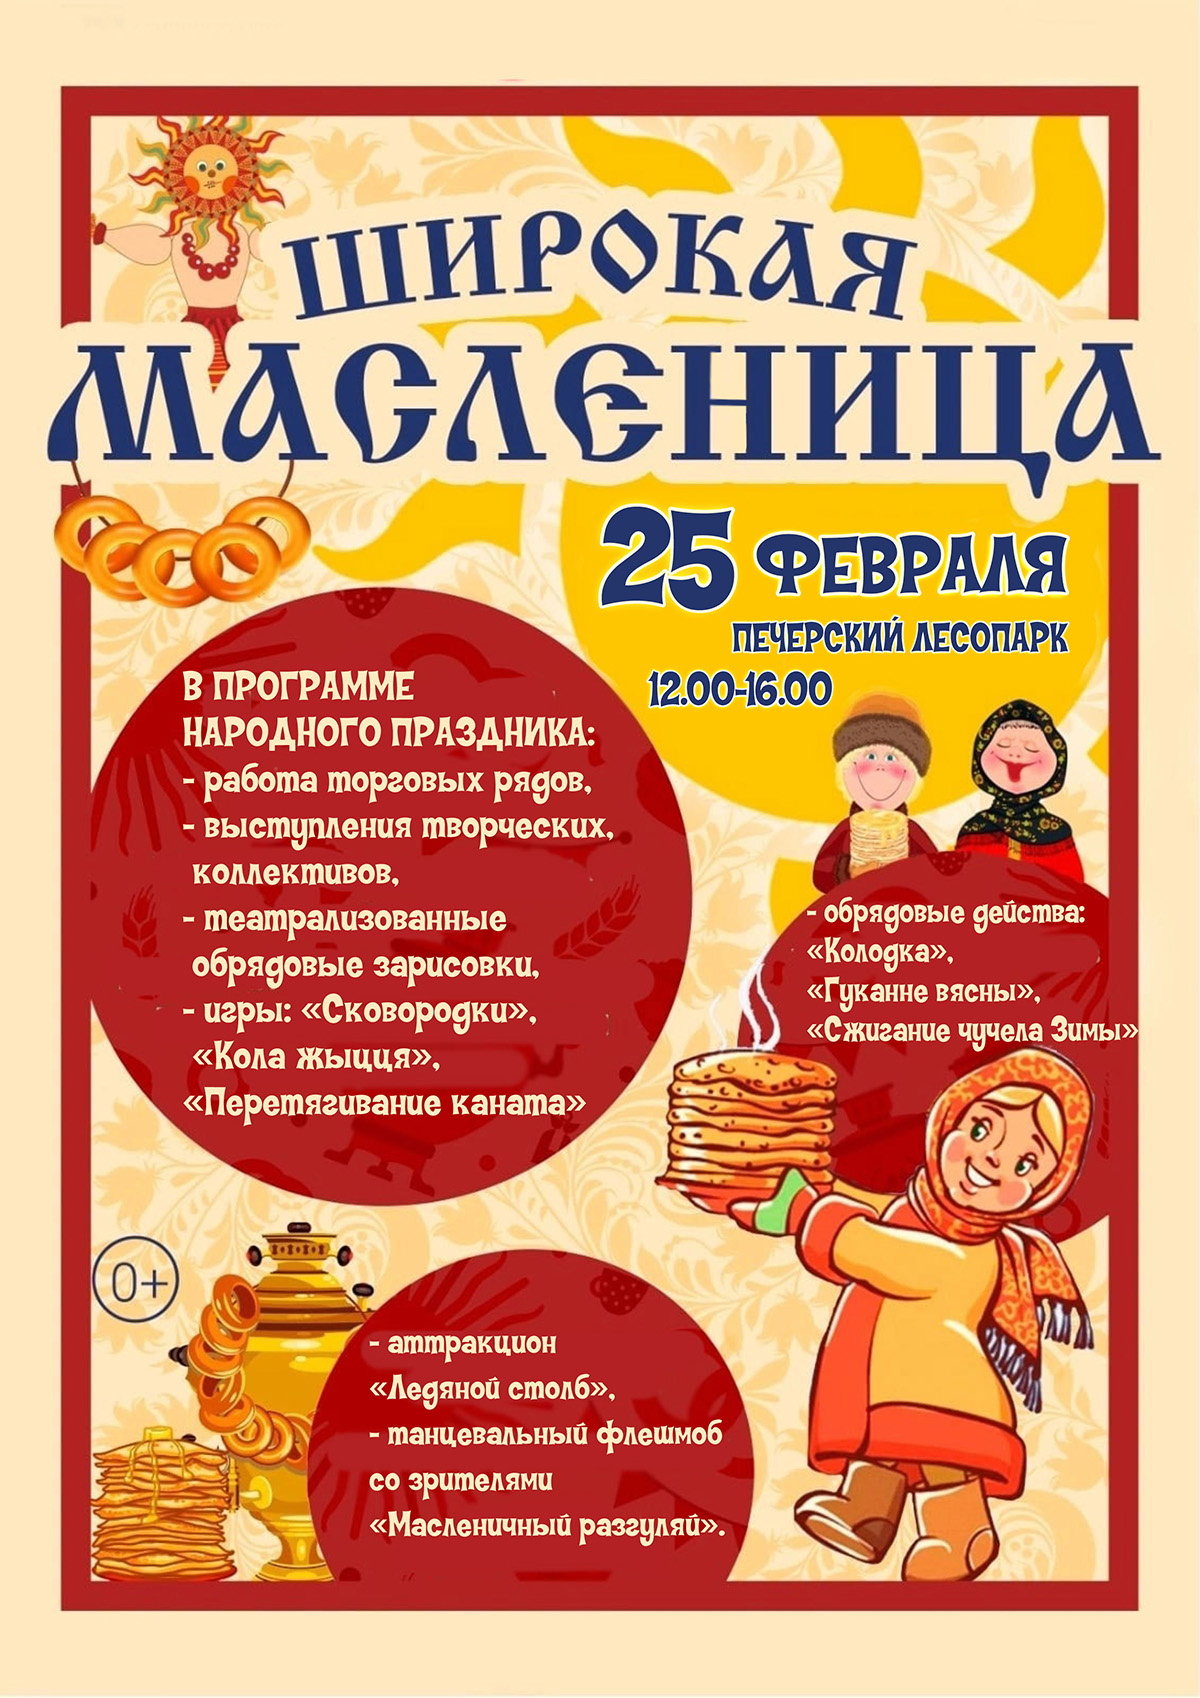 Игры, театрализованные зарисовки, обрядовые действа: Масленицу в Могилеве отметят 25 февраля